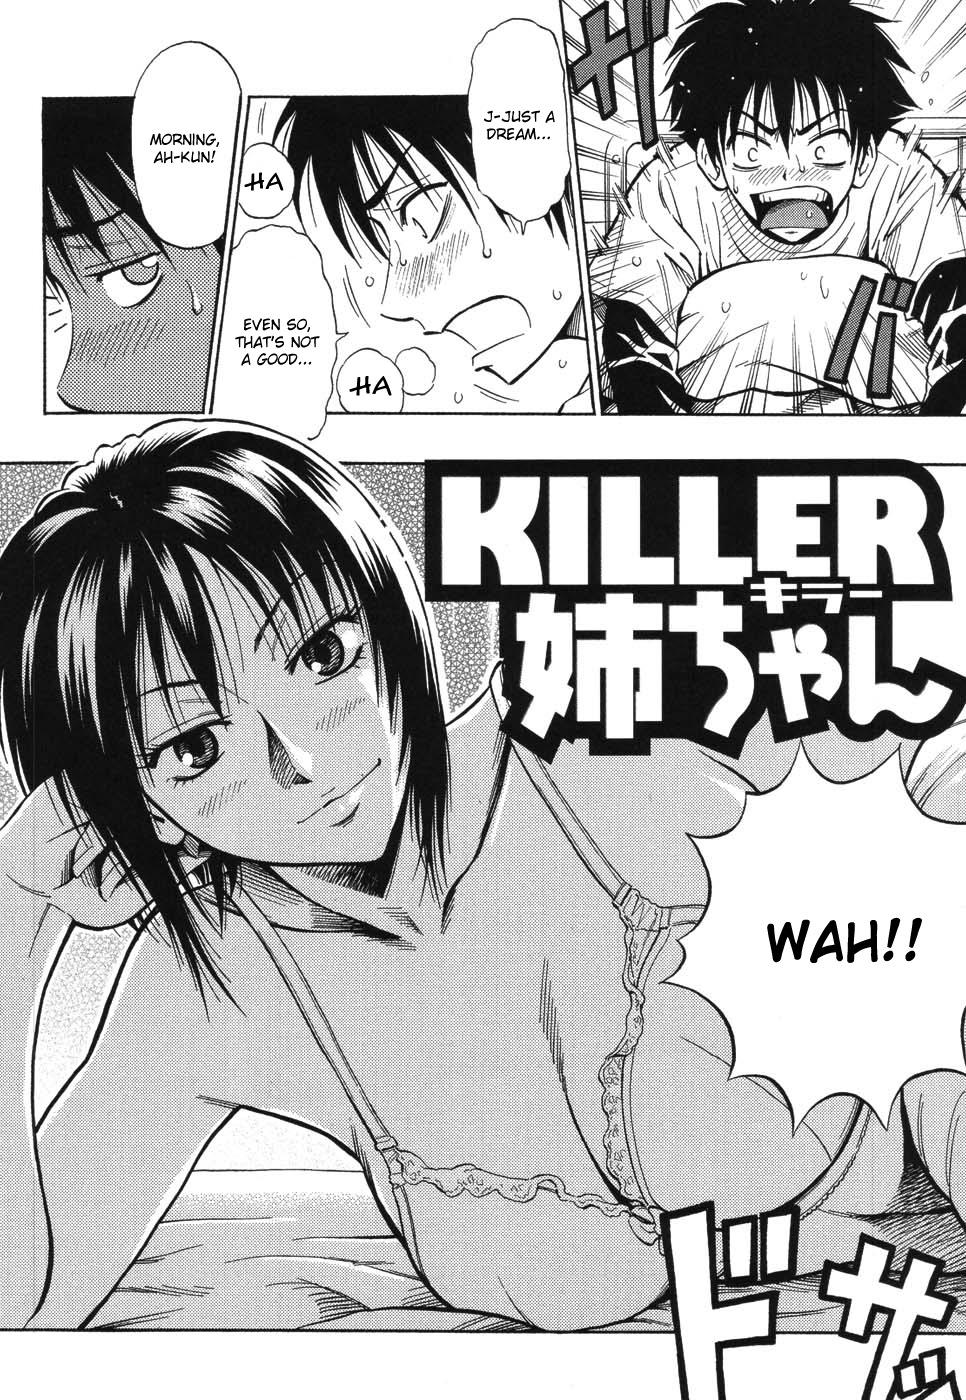 Ball Busting KILLER Nee-chan Pool - Page 2